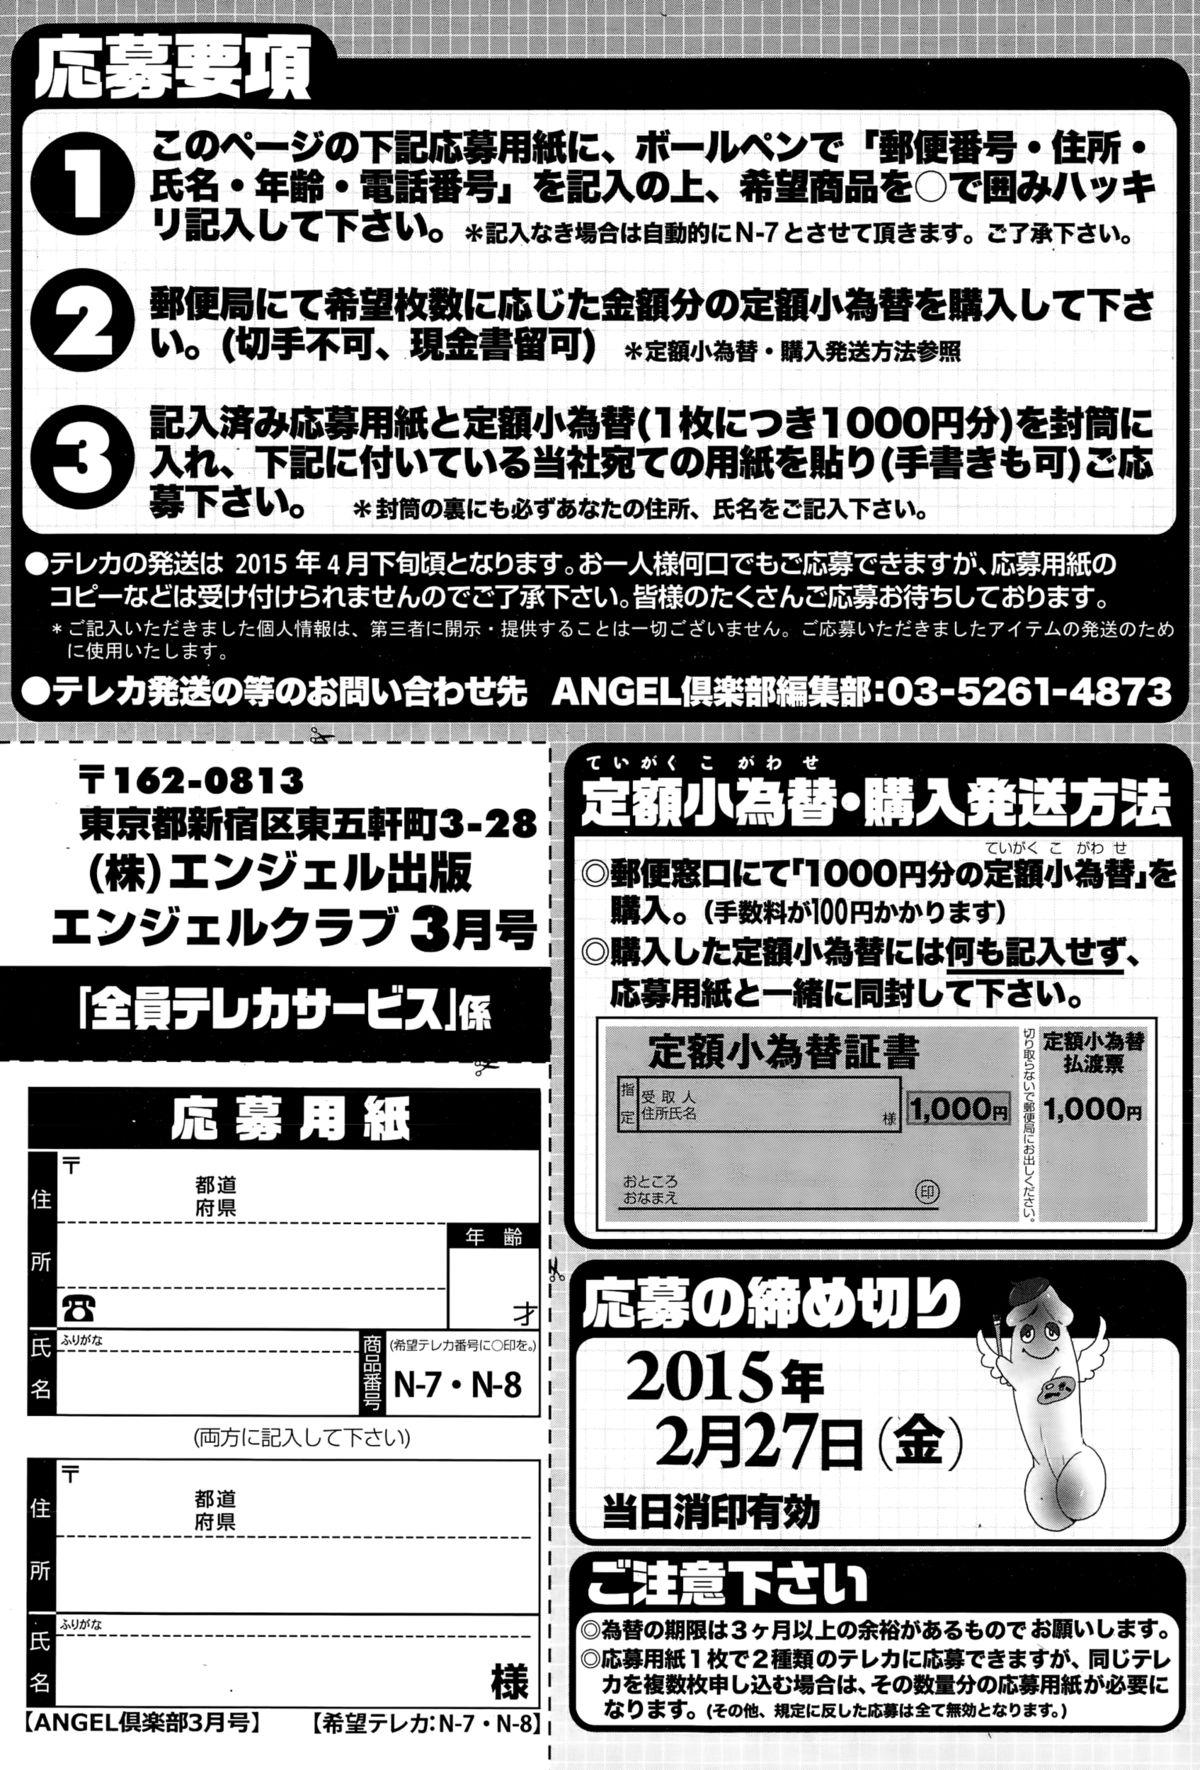 ANGEL Club 2015-03 206